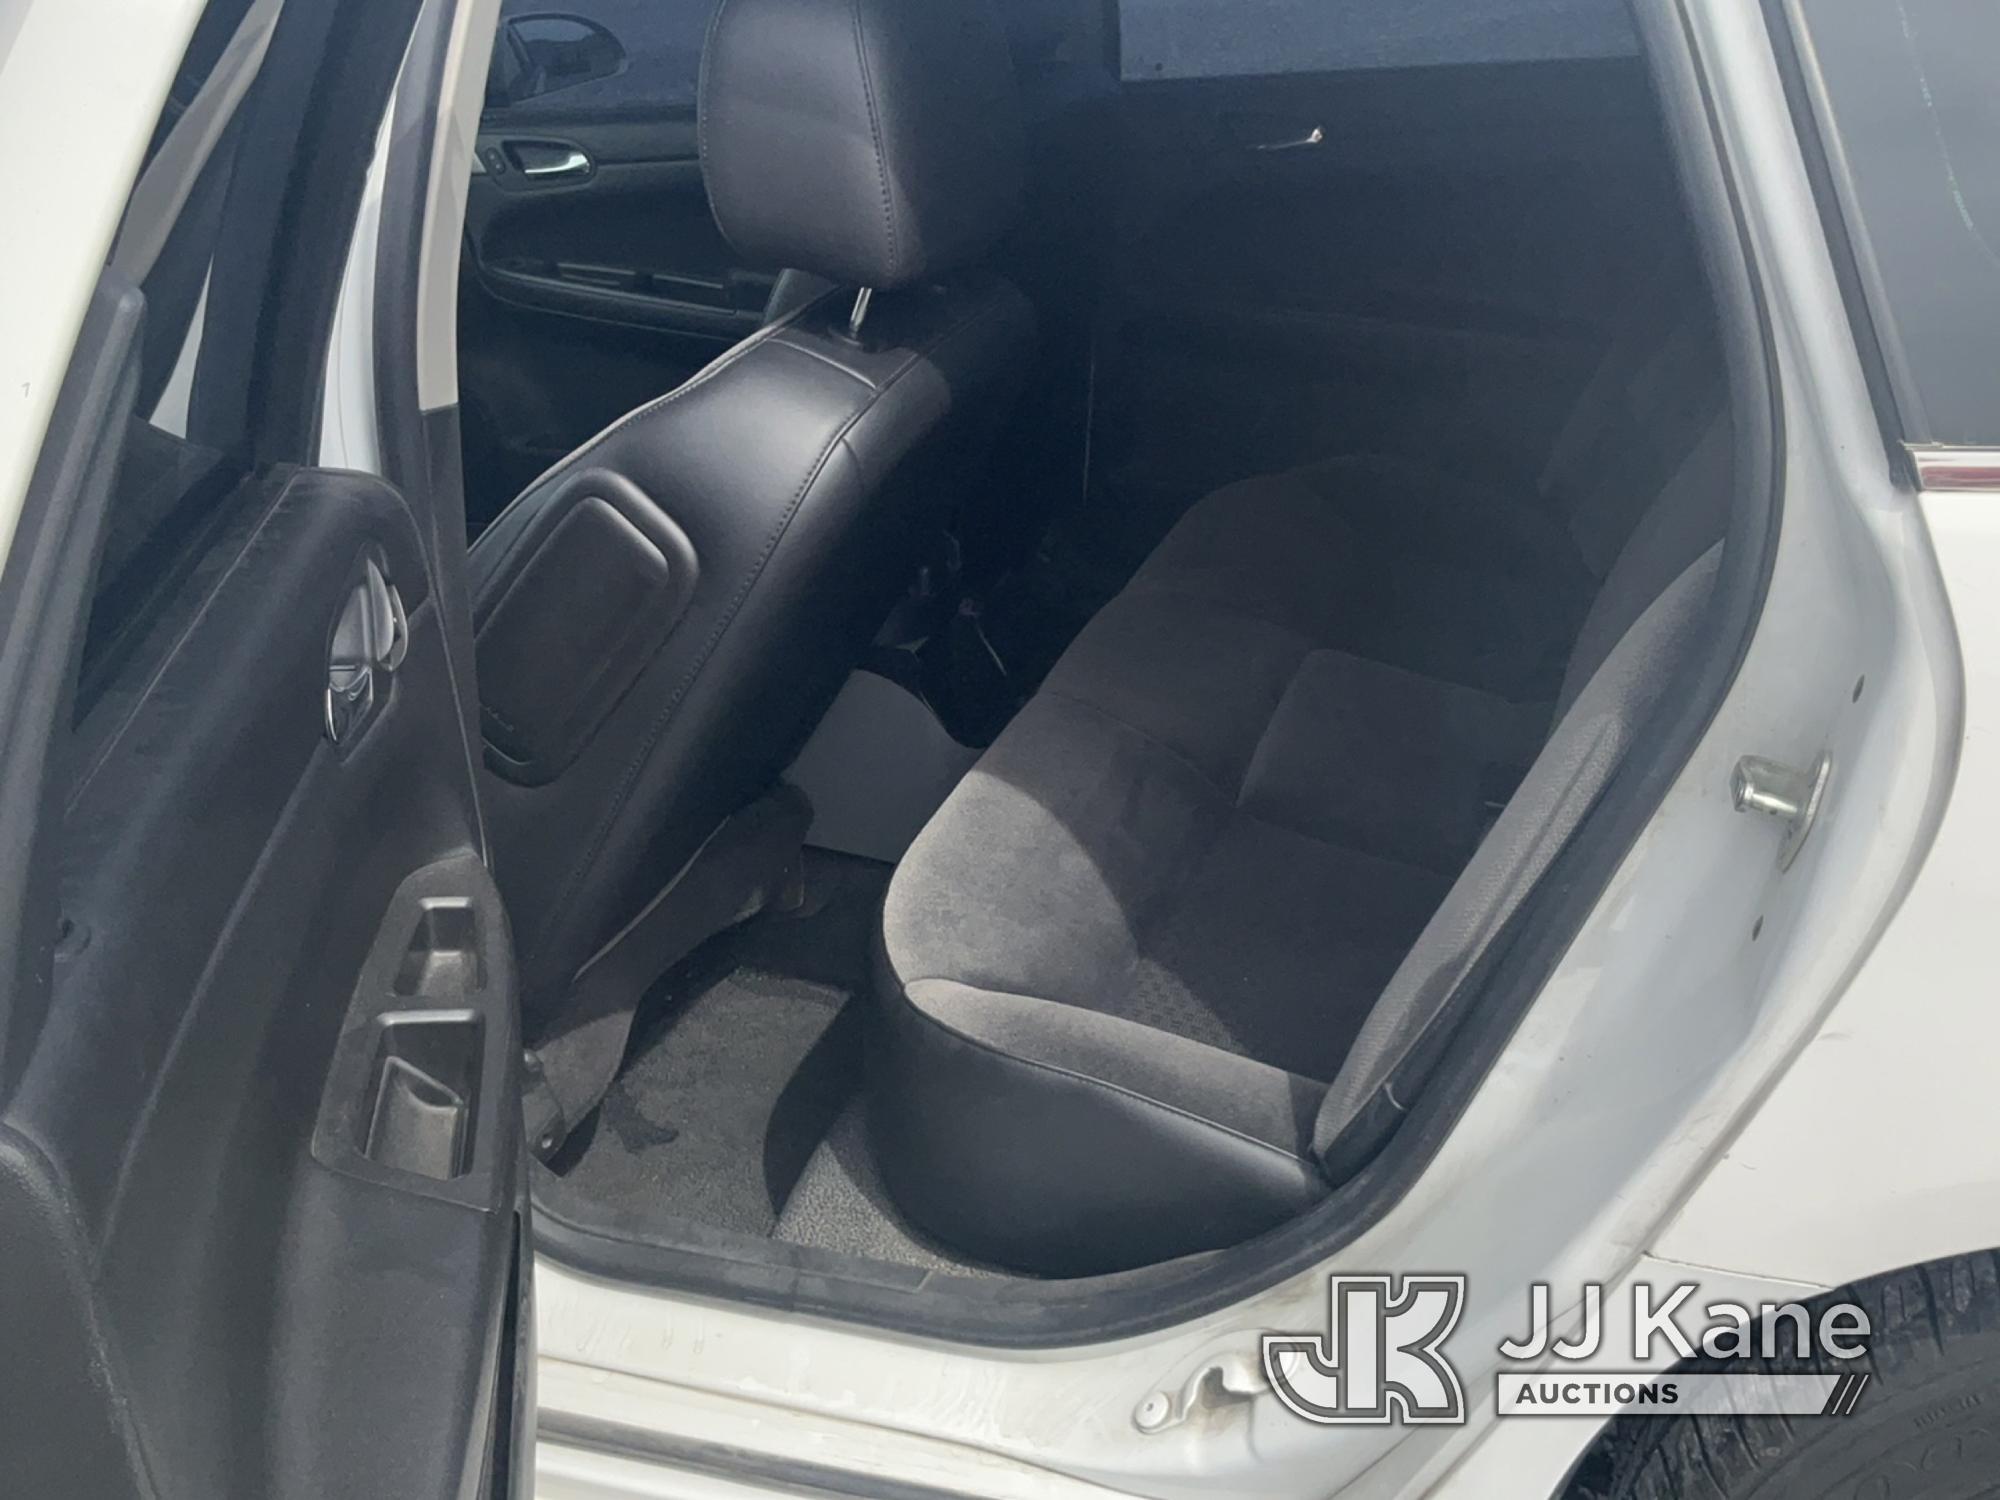 (Las Vegas, NV) 2013 Chevrolet Impala 4-Door Sedan, Bad Steering Runs & Moves